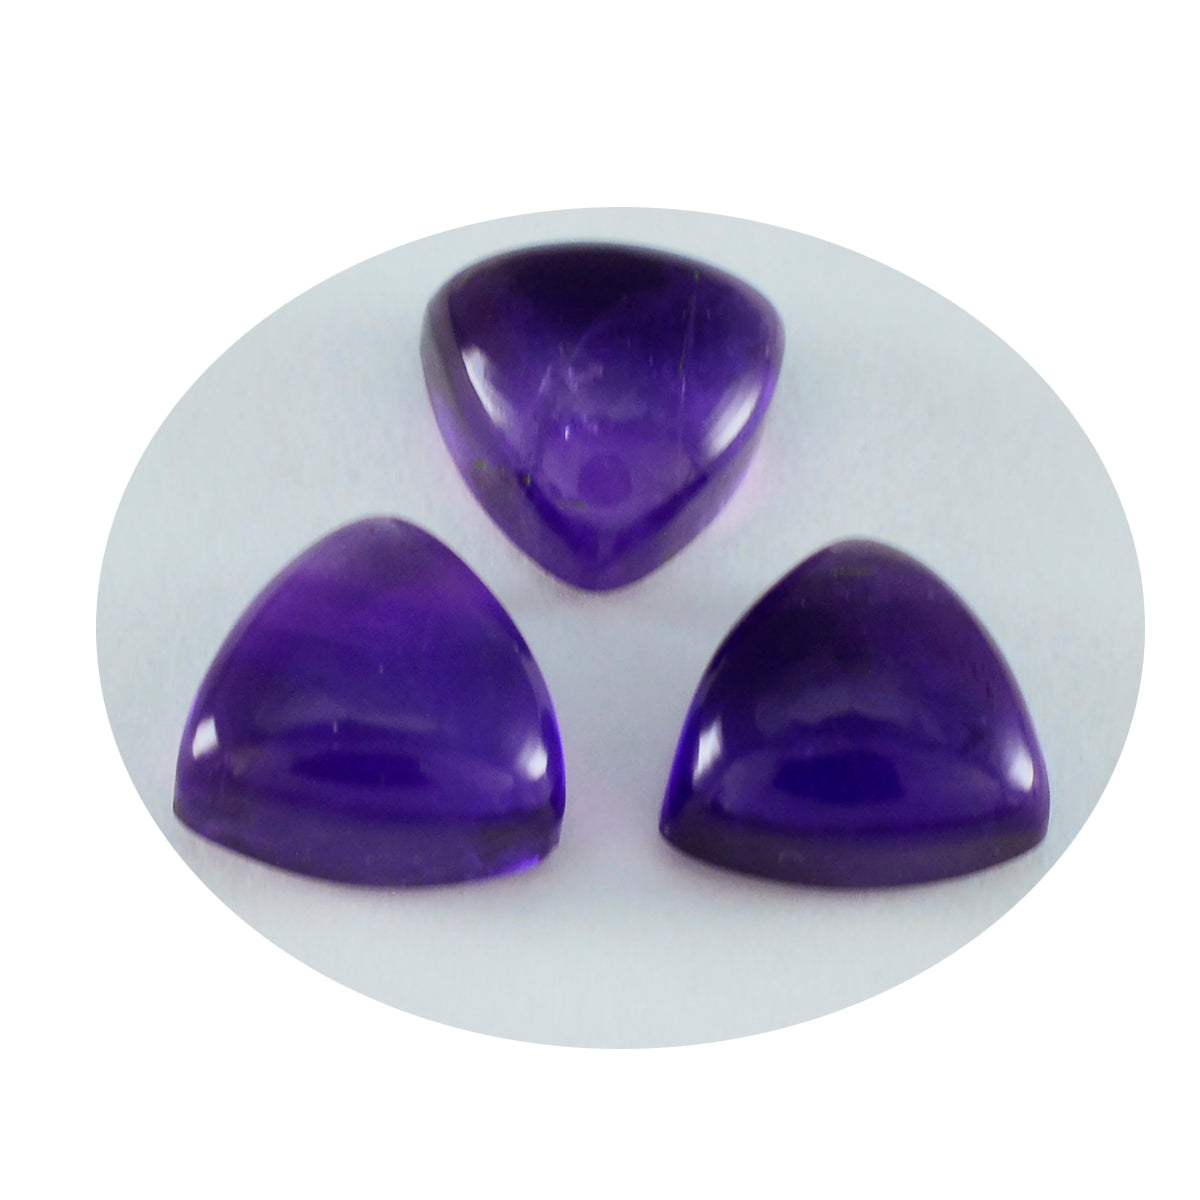 Riyogems 1PC Purple Amethyst Cabochon 8X8 mm Trillion Shape wonderful Quality Loose Gemstone